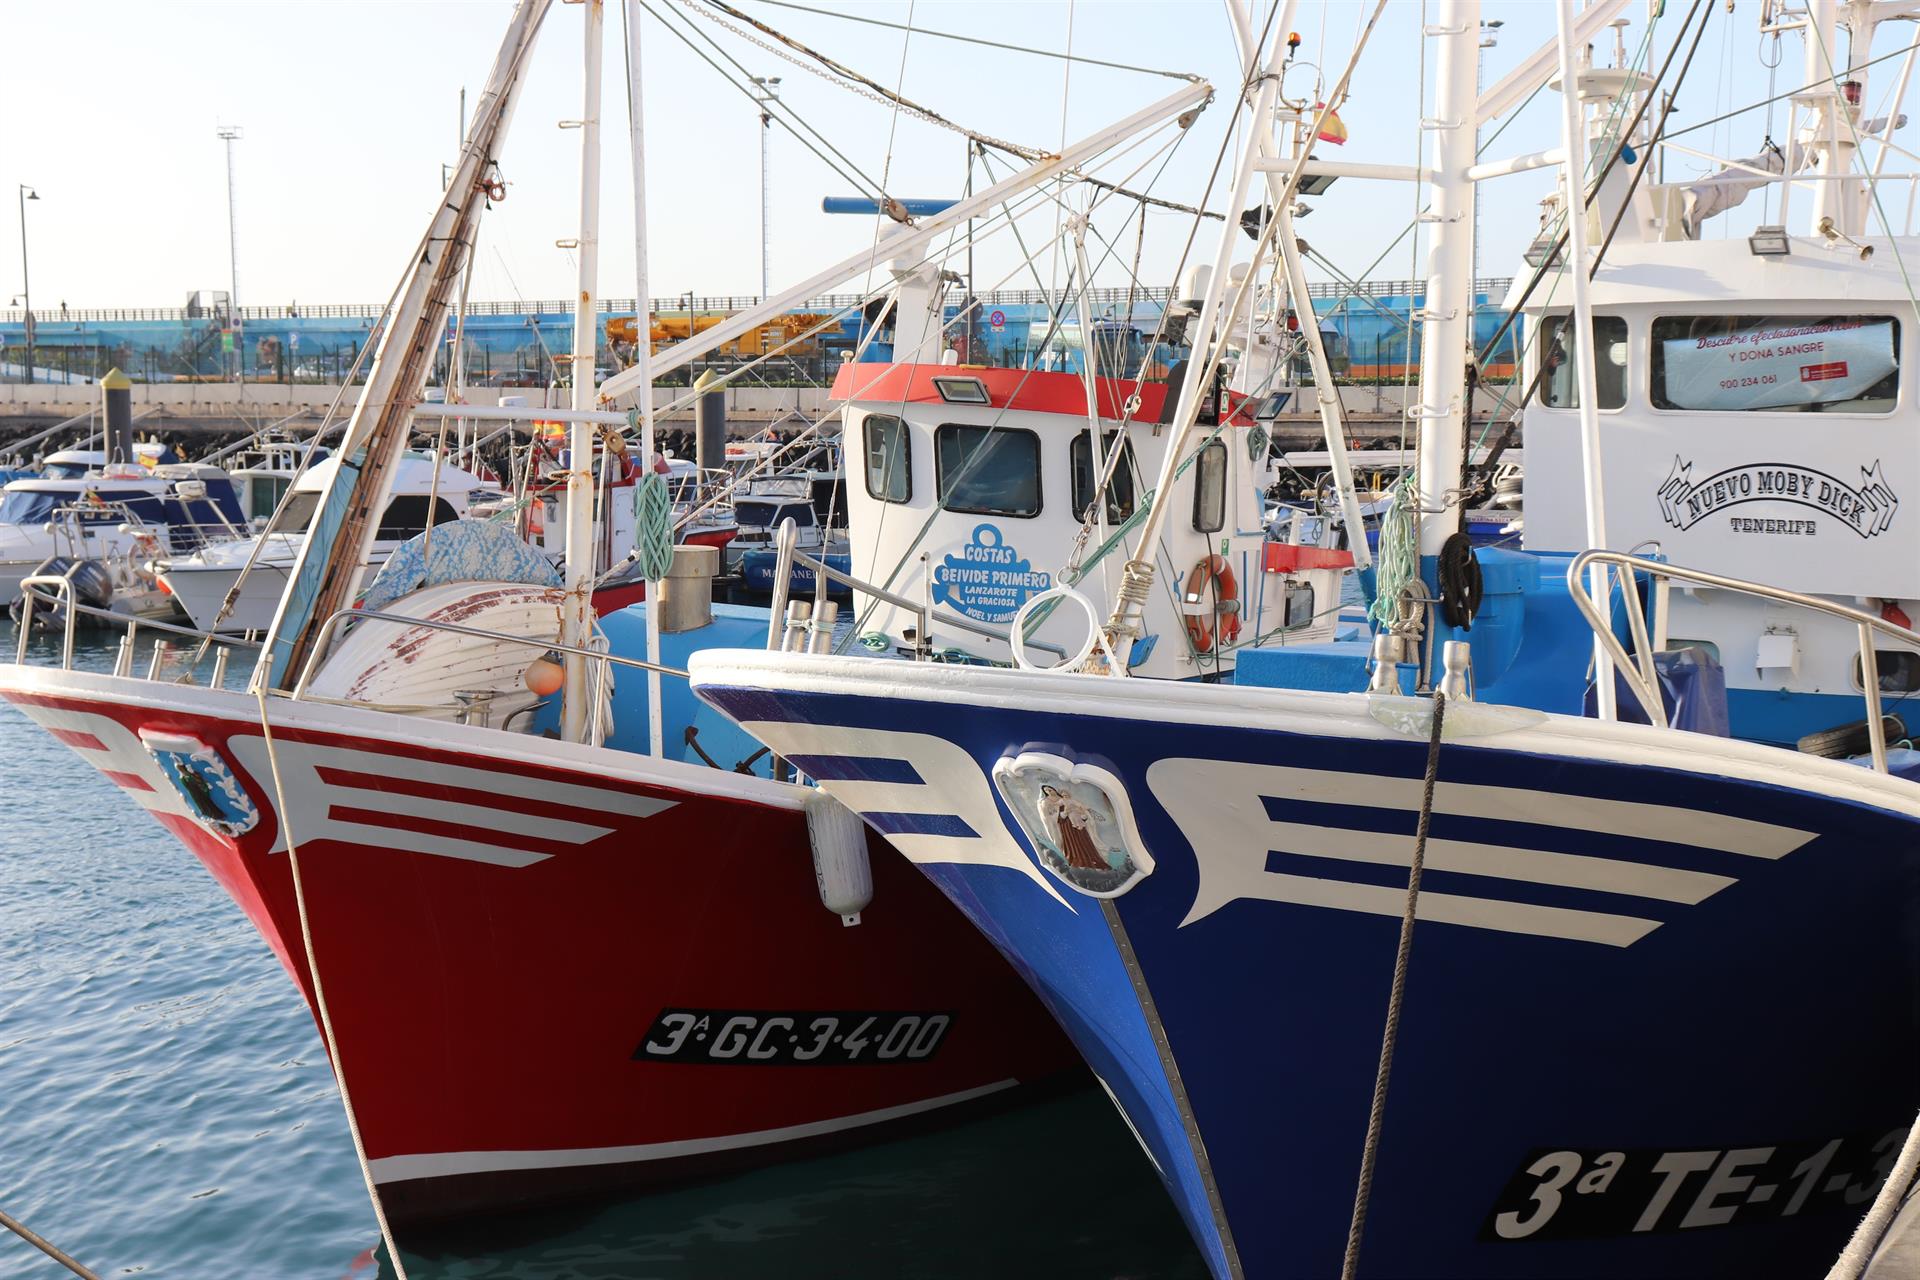 Los autores instan a la UE y el Gobierno español a apoyar las formas de pesca más selectivas frente a la sobrepesca / Foto: Gobierno de Canarias